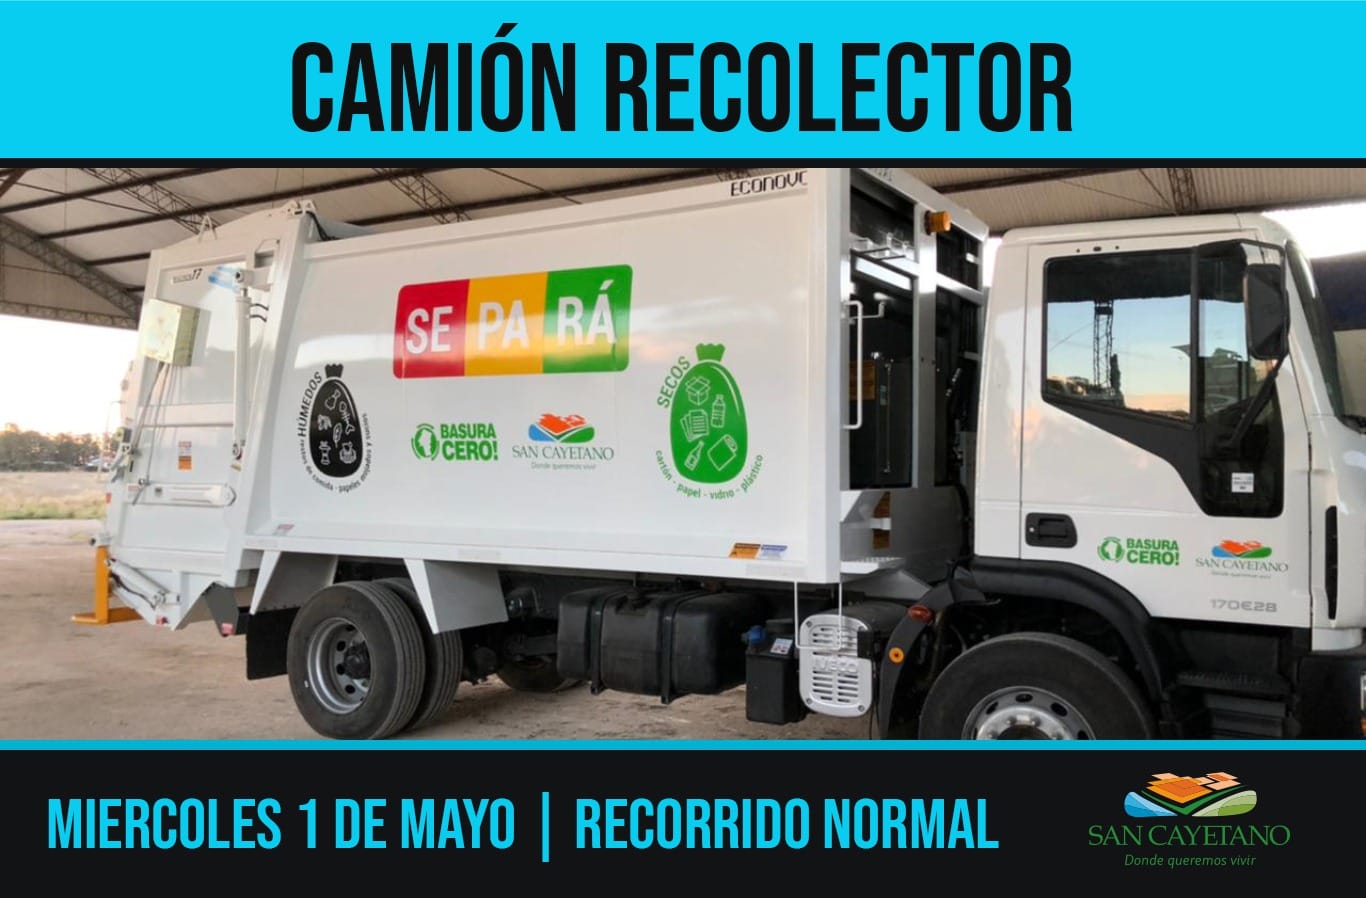 San Cayetano: Normal recorrido del camión recolector